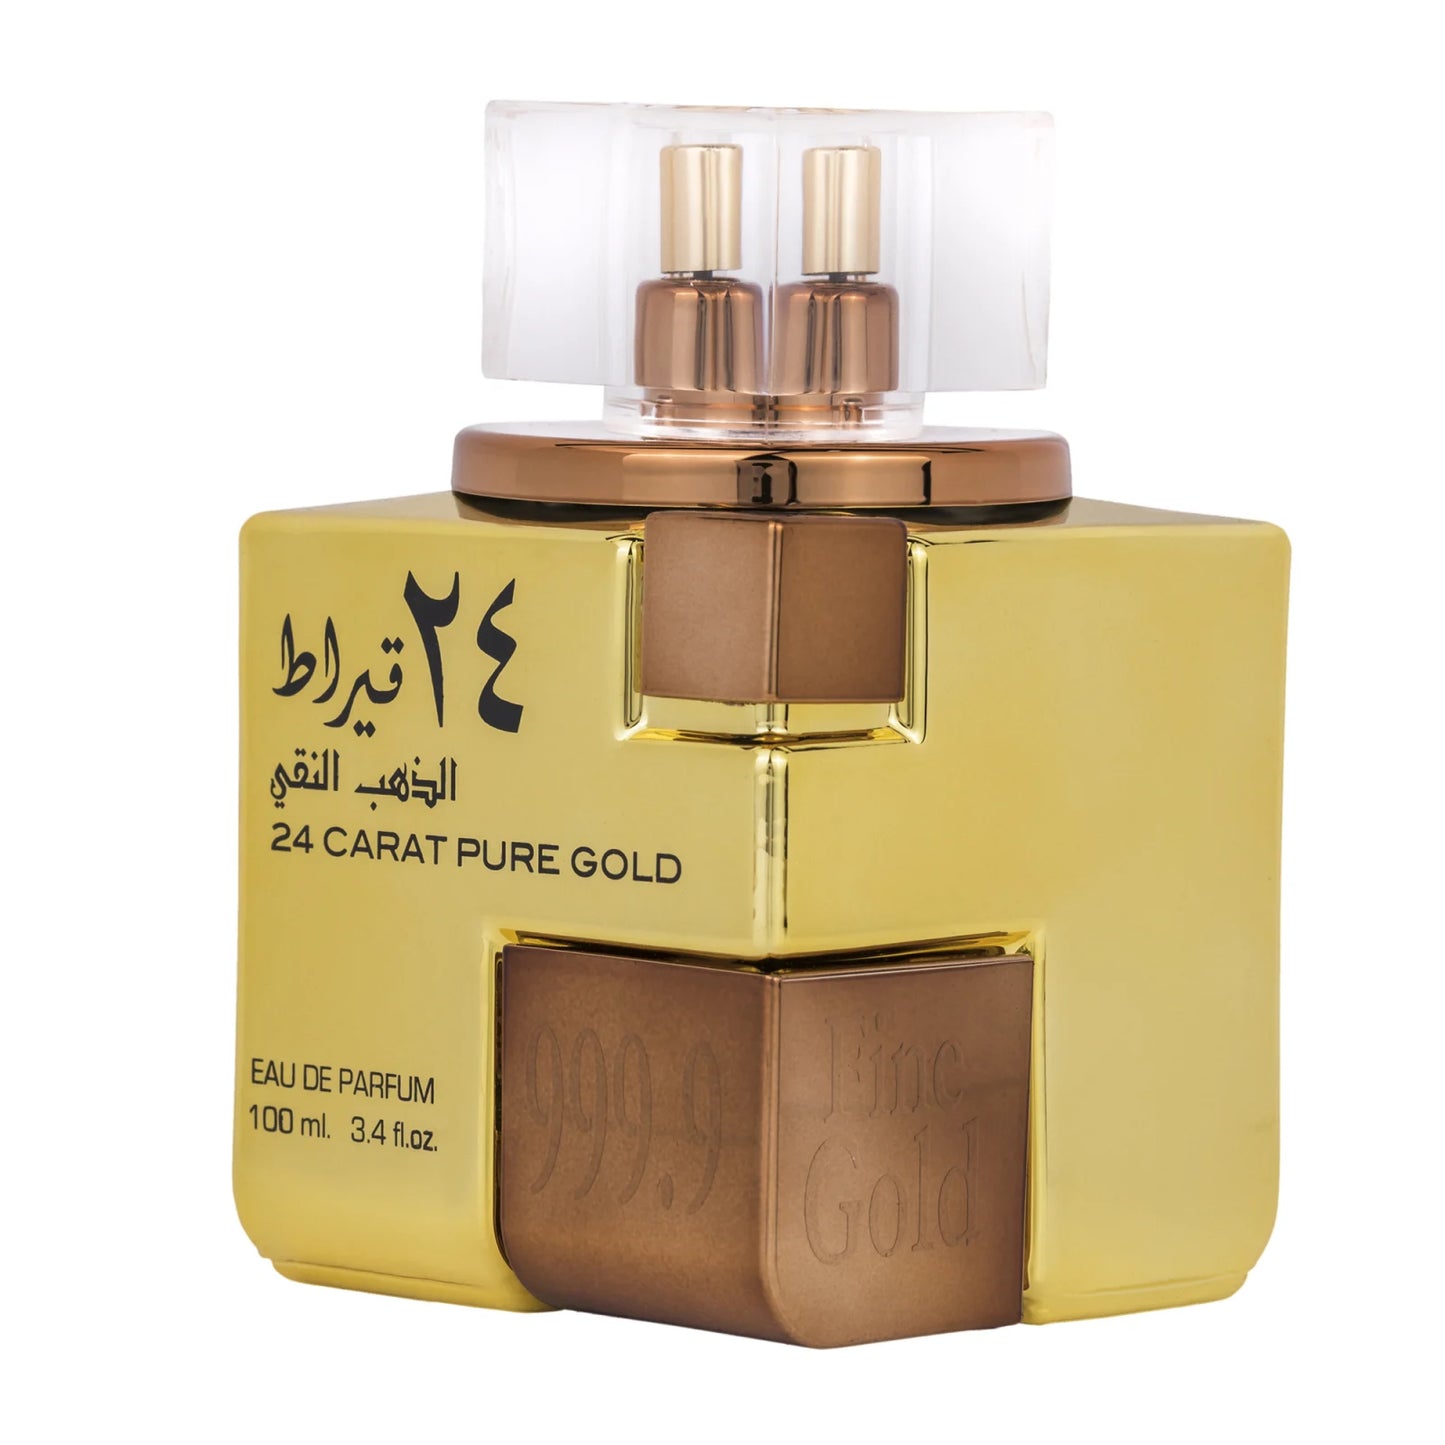 Parfum arabesc 24 Carat Pure Gold, Lattafa, apa de parfum 100 ml, unisex